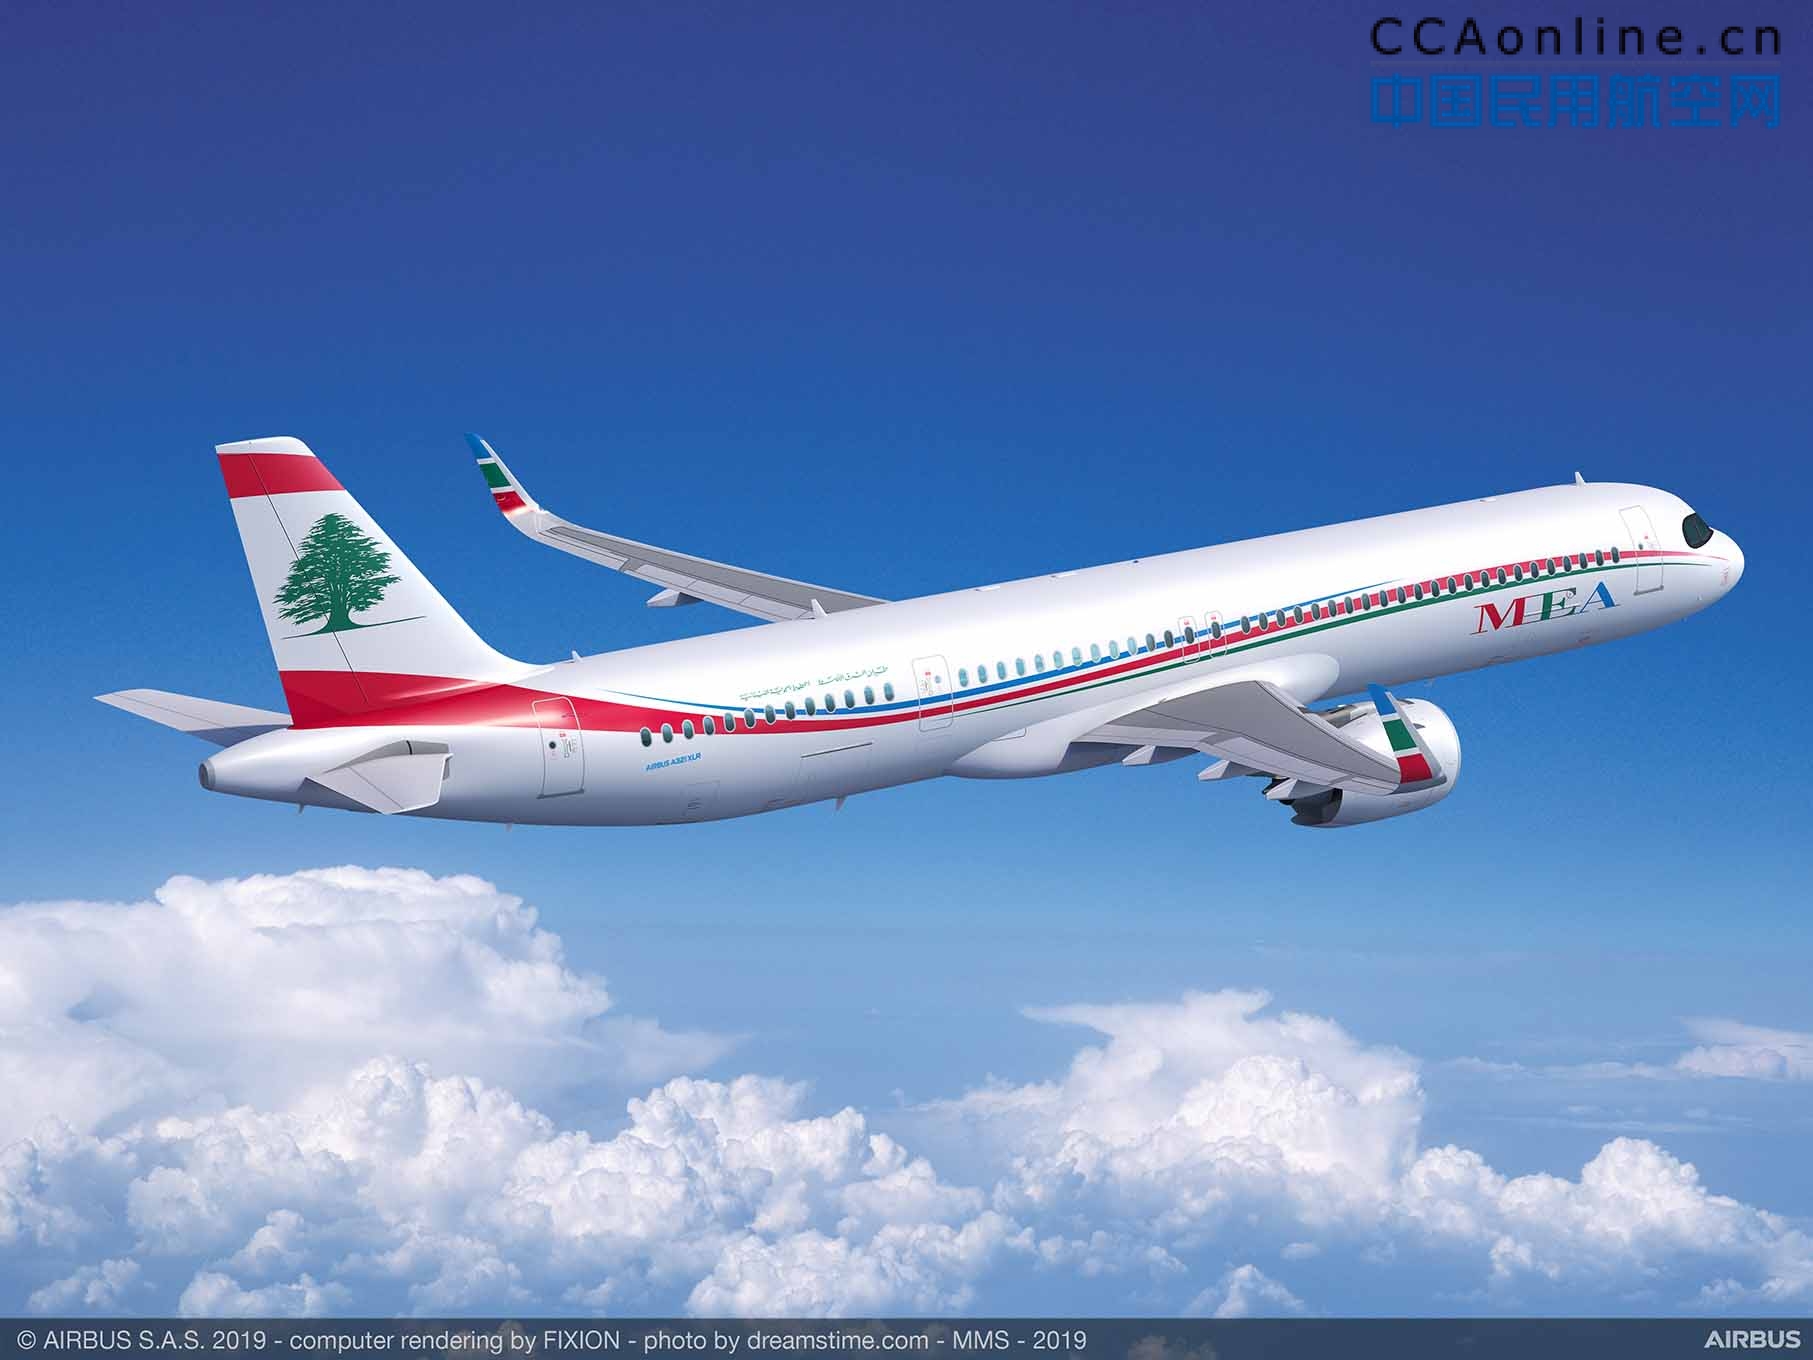 中东航空订购4架空客超远程型A321XLR飞机